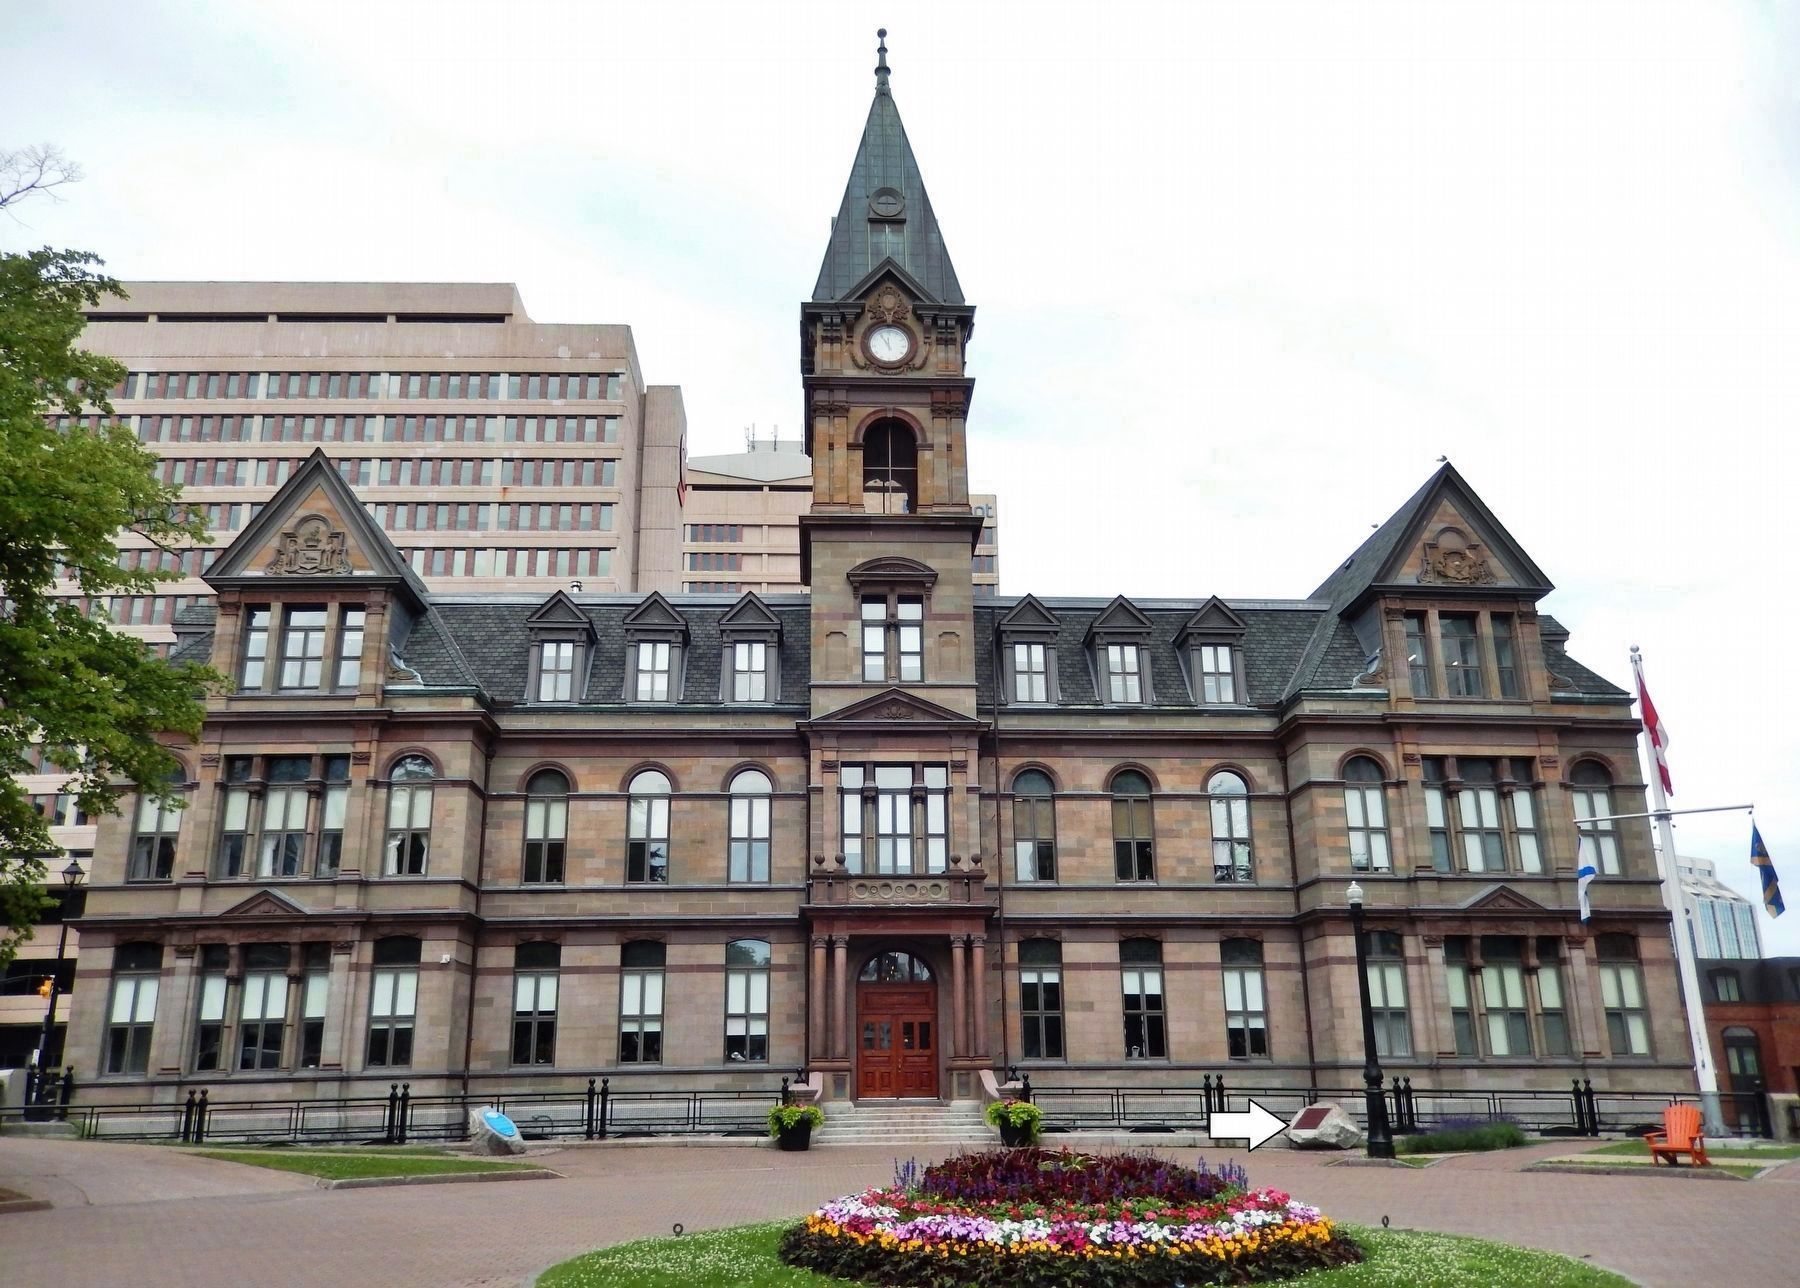 Halifax City Hall / Hôtel de ville d'Halifax (<i>south side • marker visible right of entrance</i>) image. Click for full size.